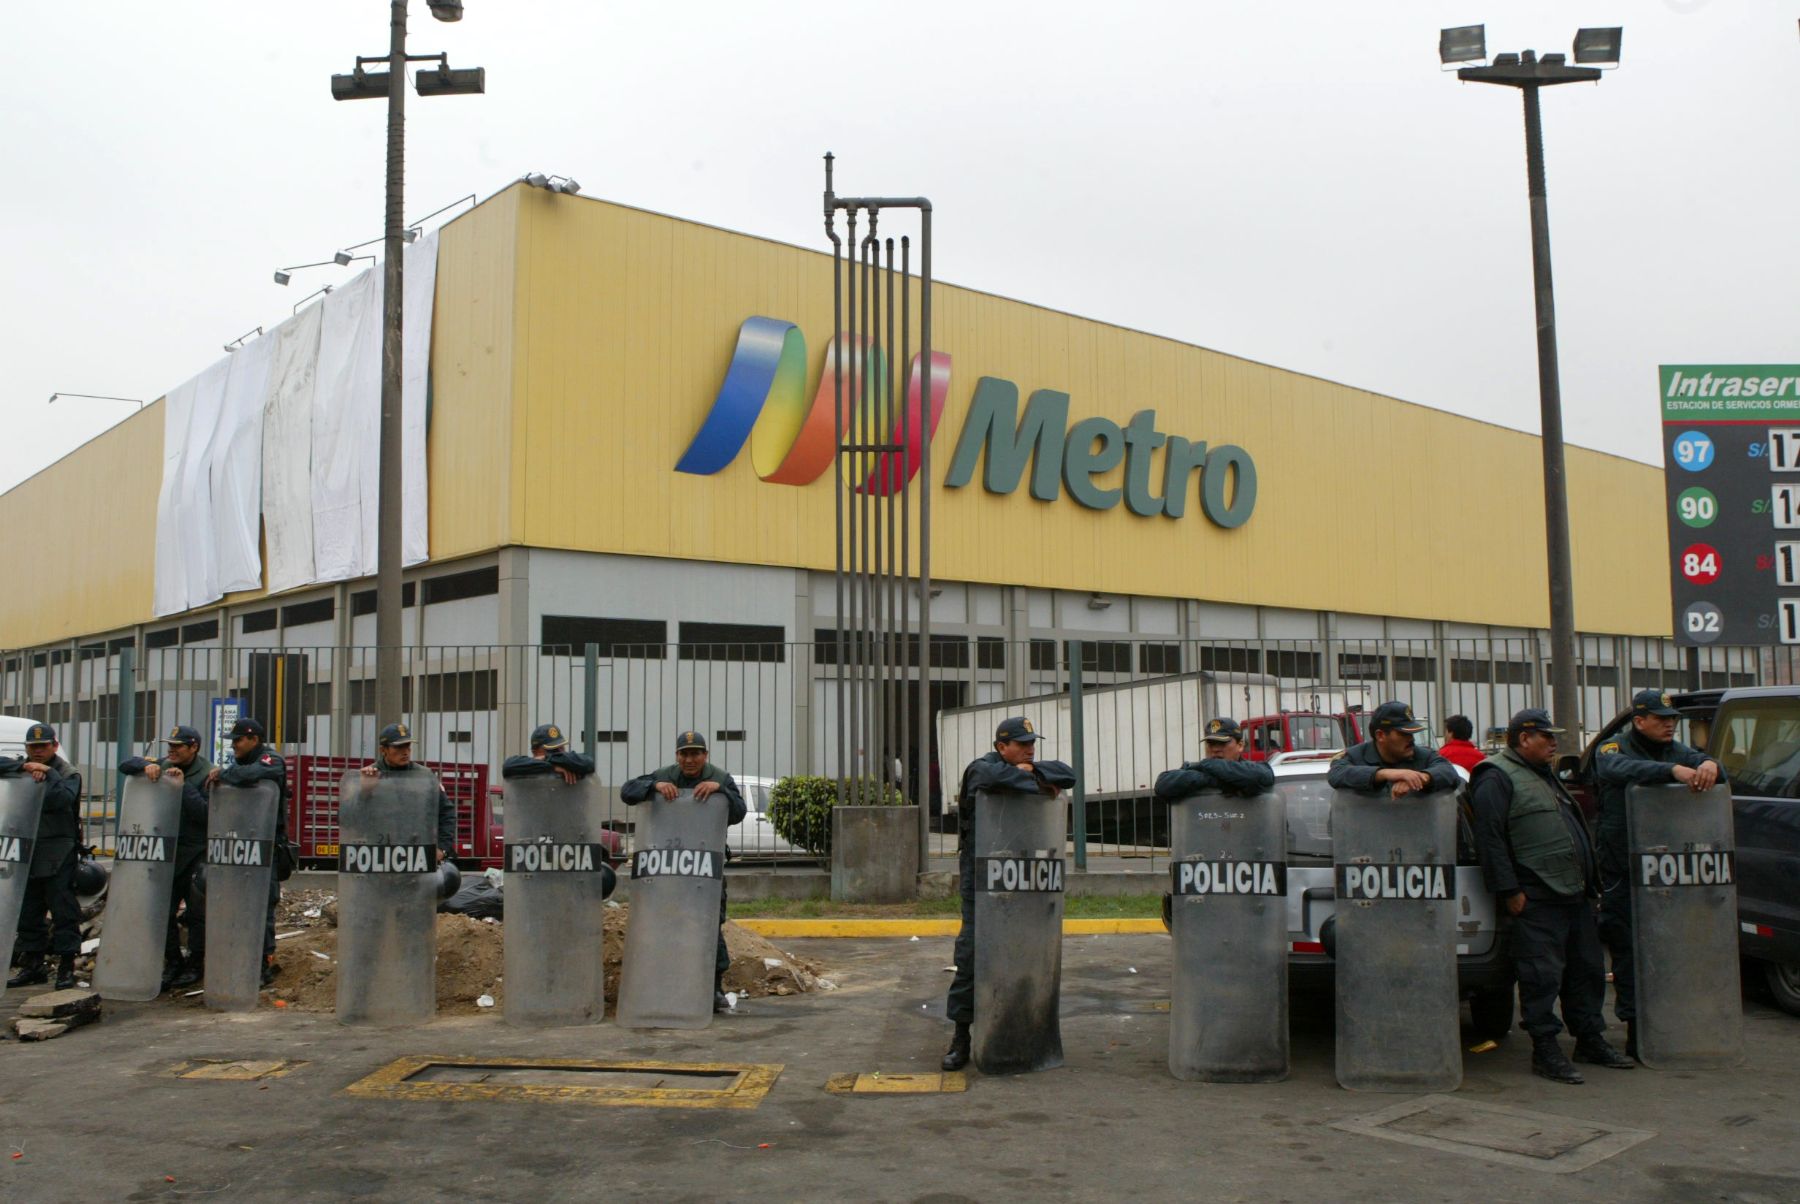 Policía resguarda supermercado Metro de Independencia, que hoy inició mudanza. Foto: ANDINA/Rubén Grández.